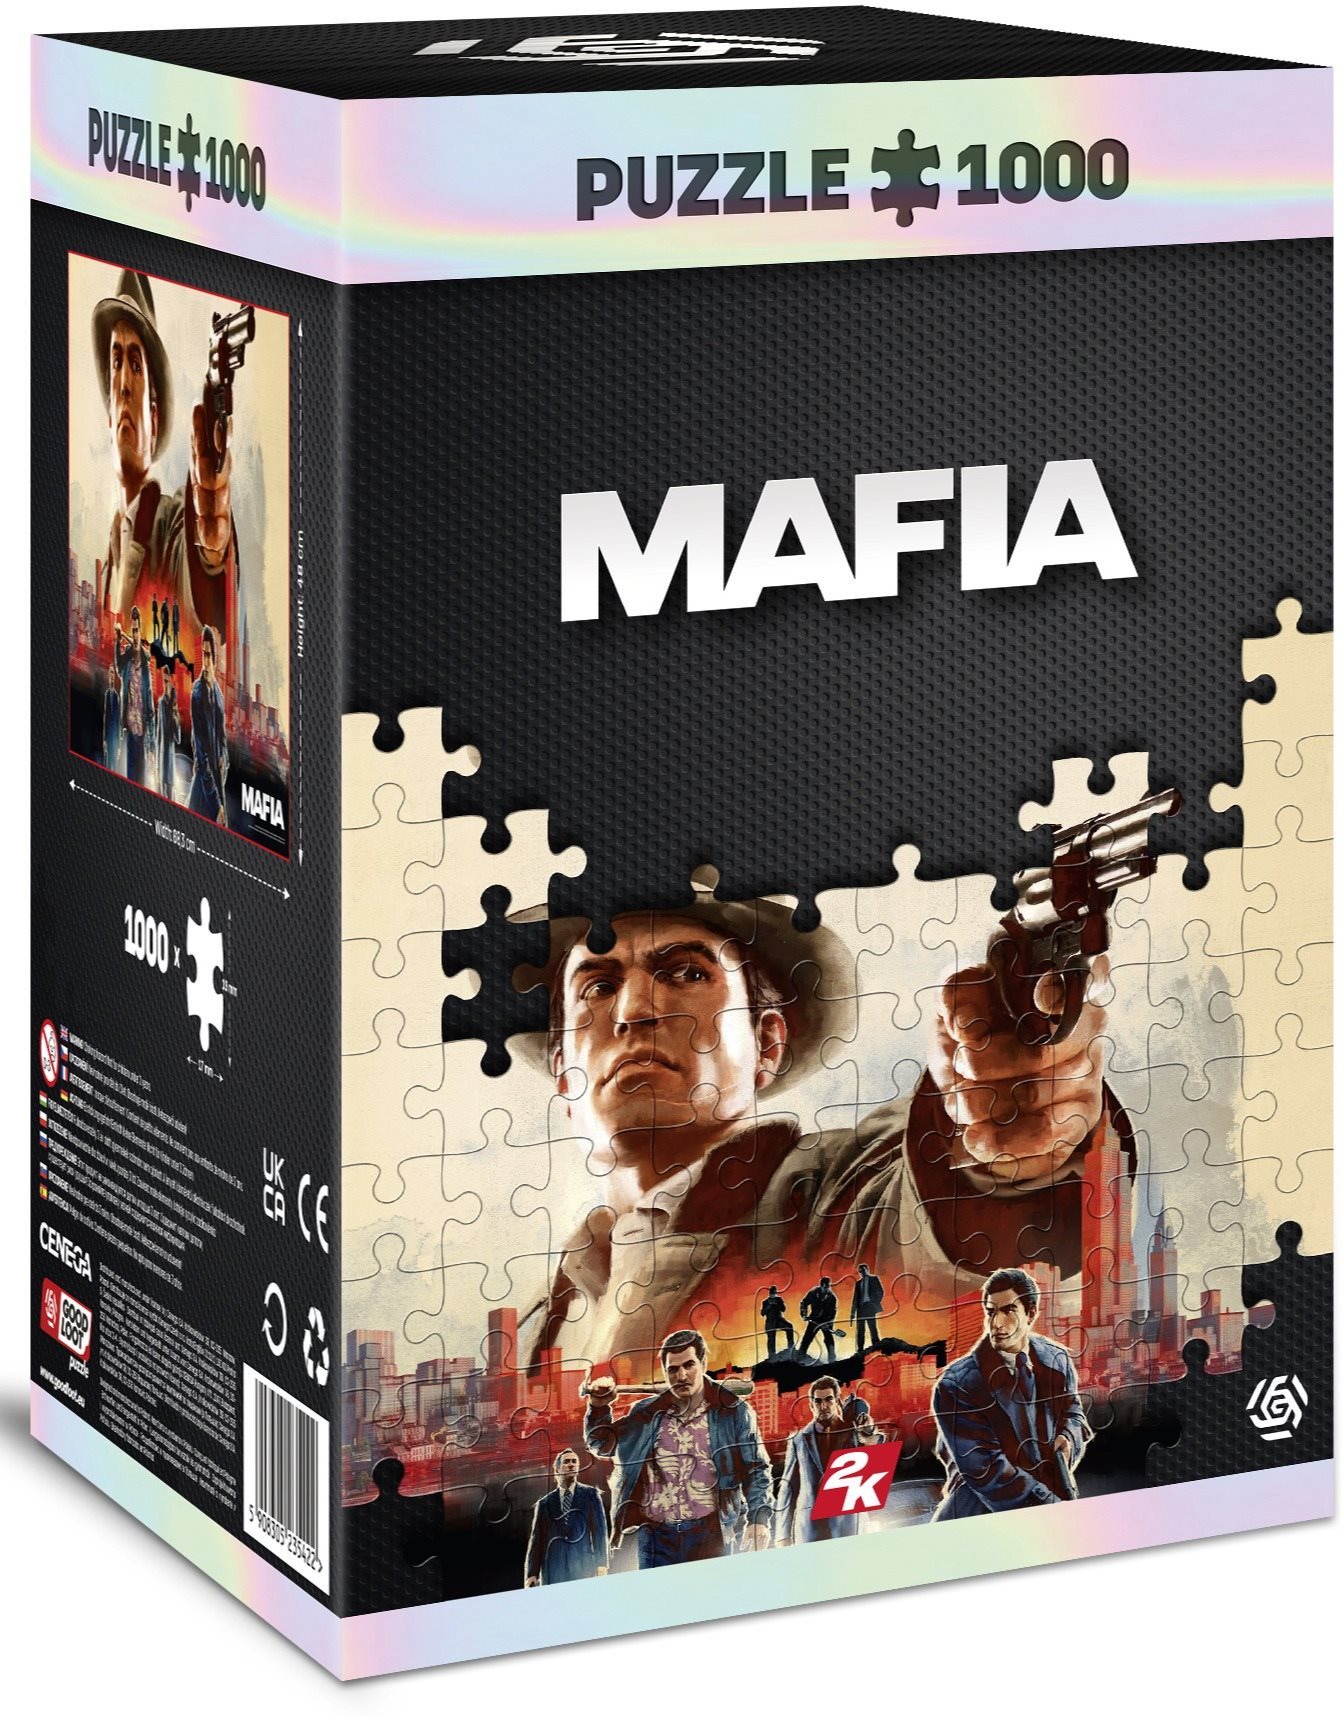 Puzzle Mafia: Vito Scaletta - Puzzle